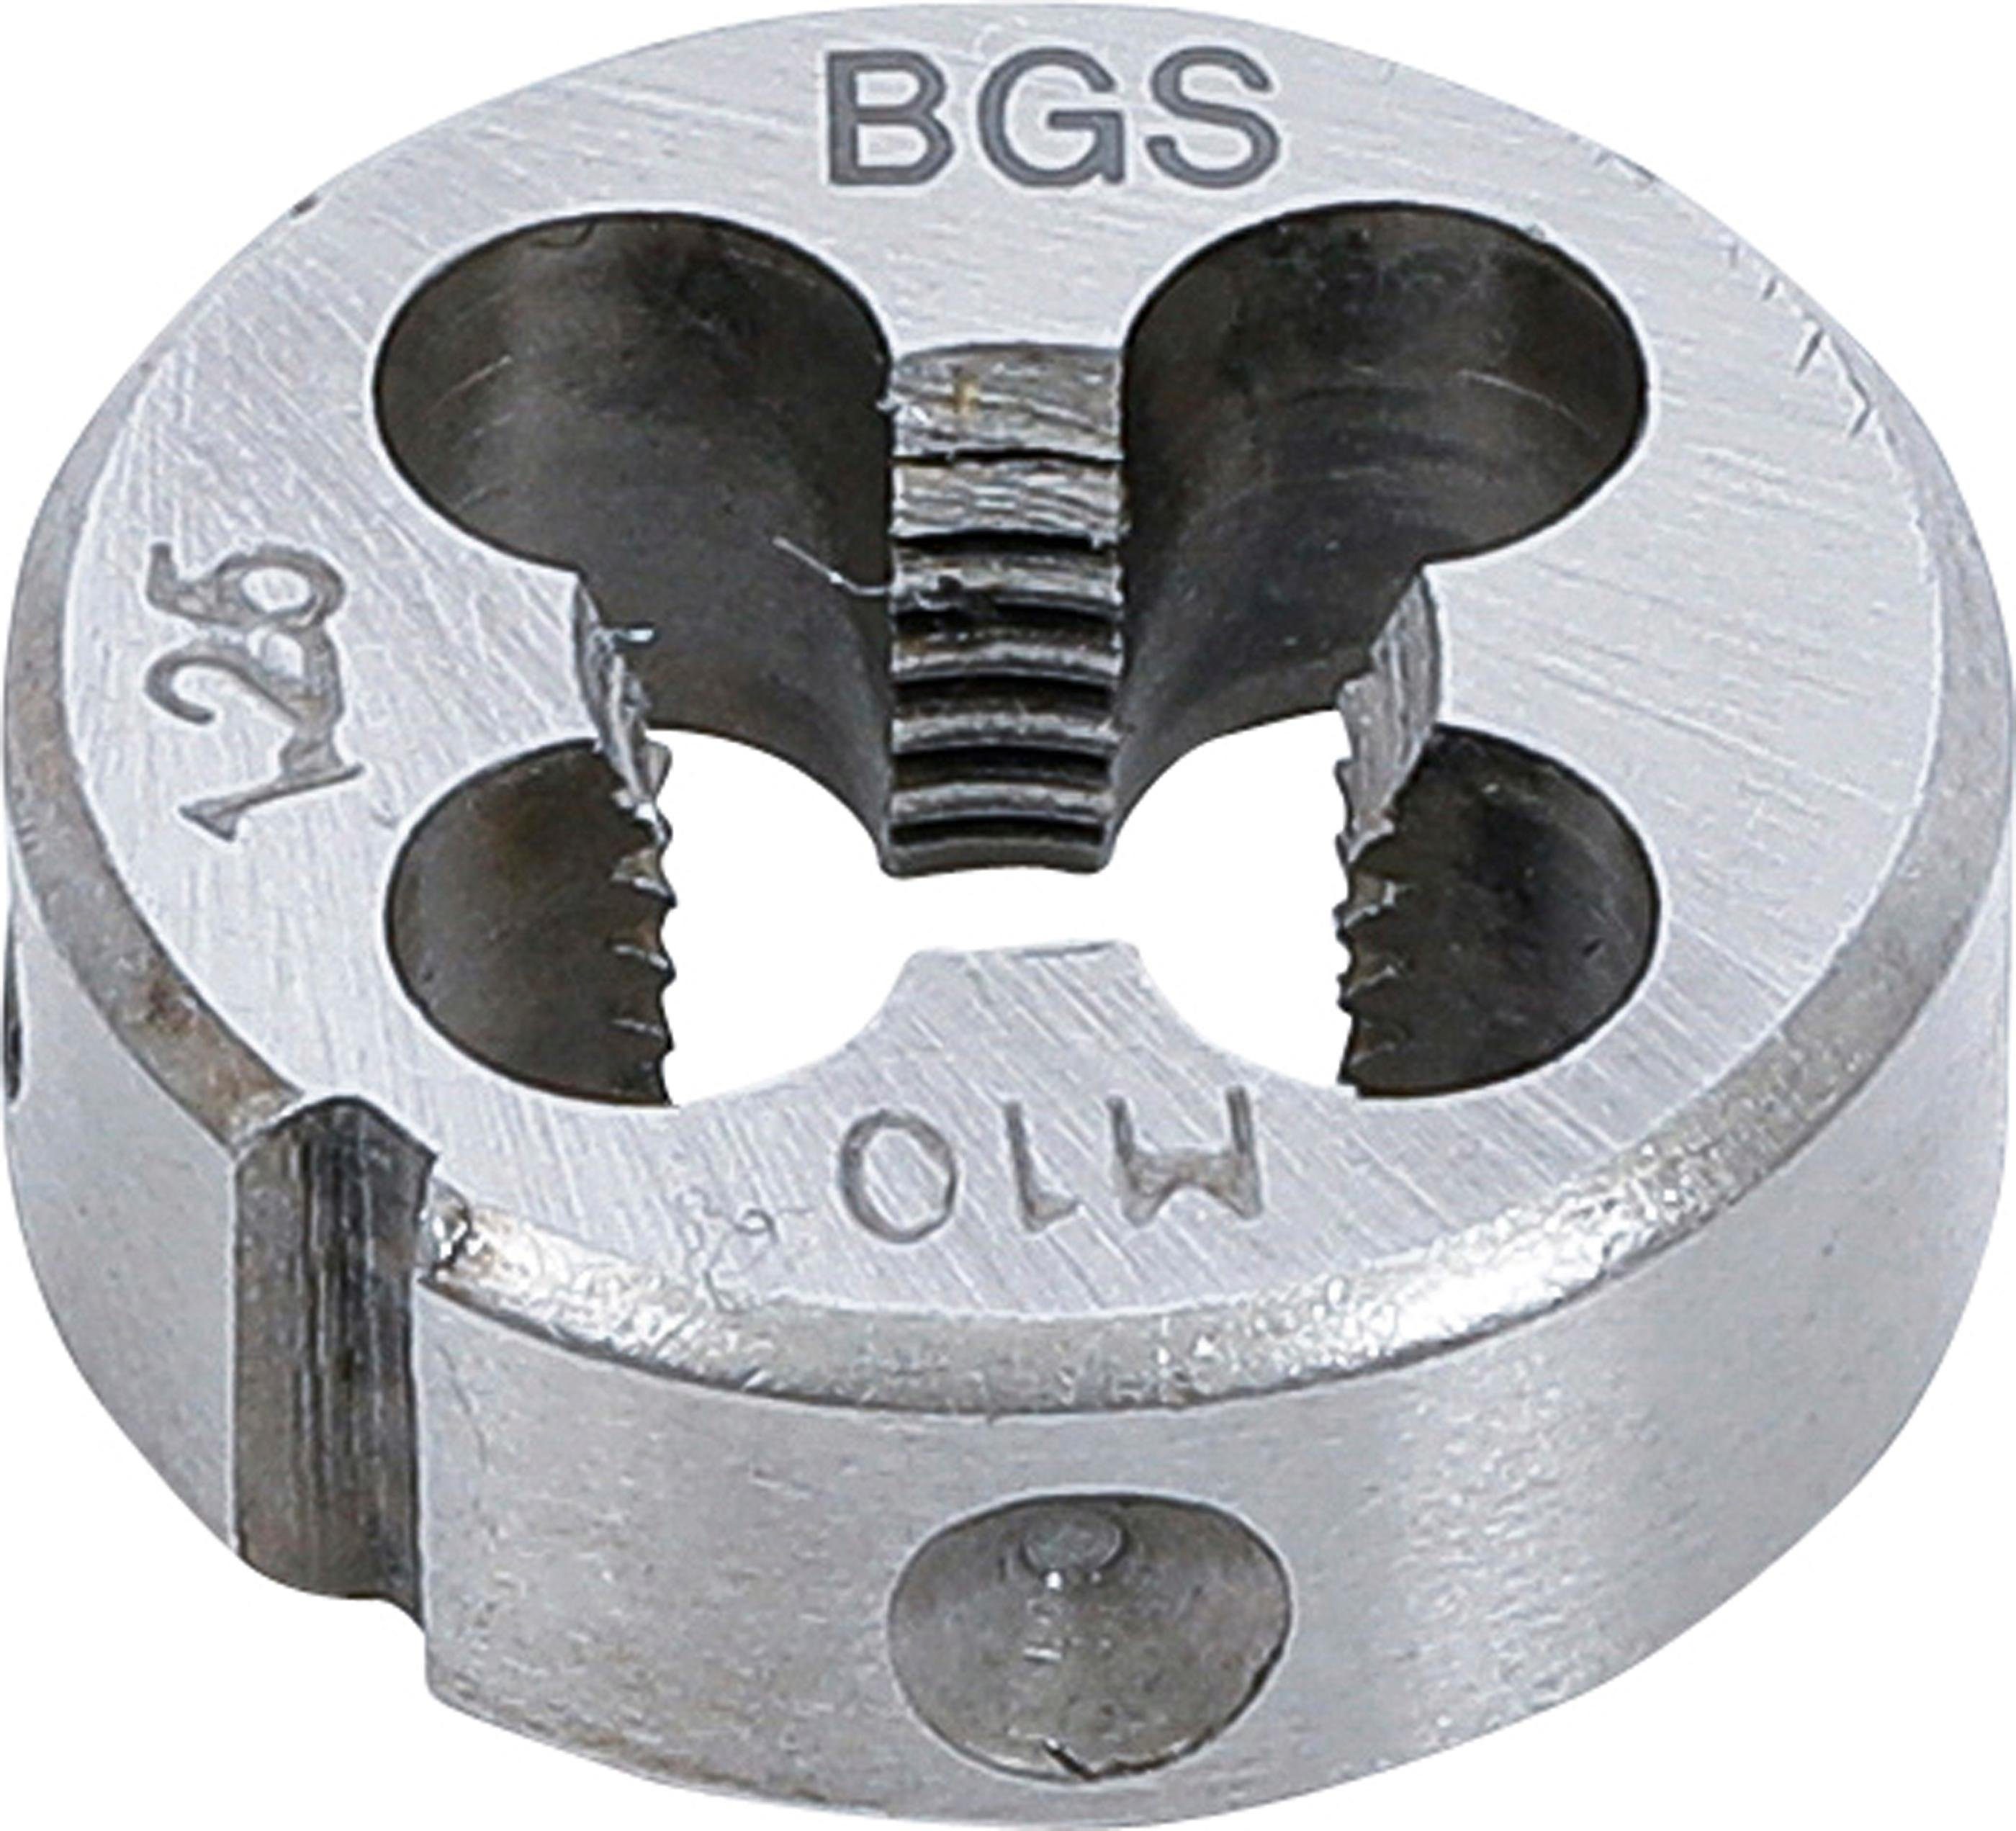 BGS technic Gewindeschneideisen Gewindeschneideisen, M10 x 1,25 x 25 mm